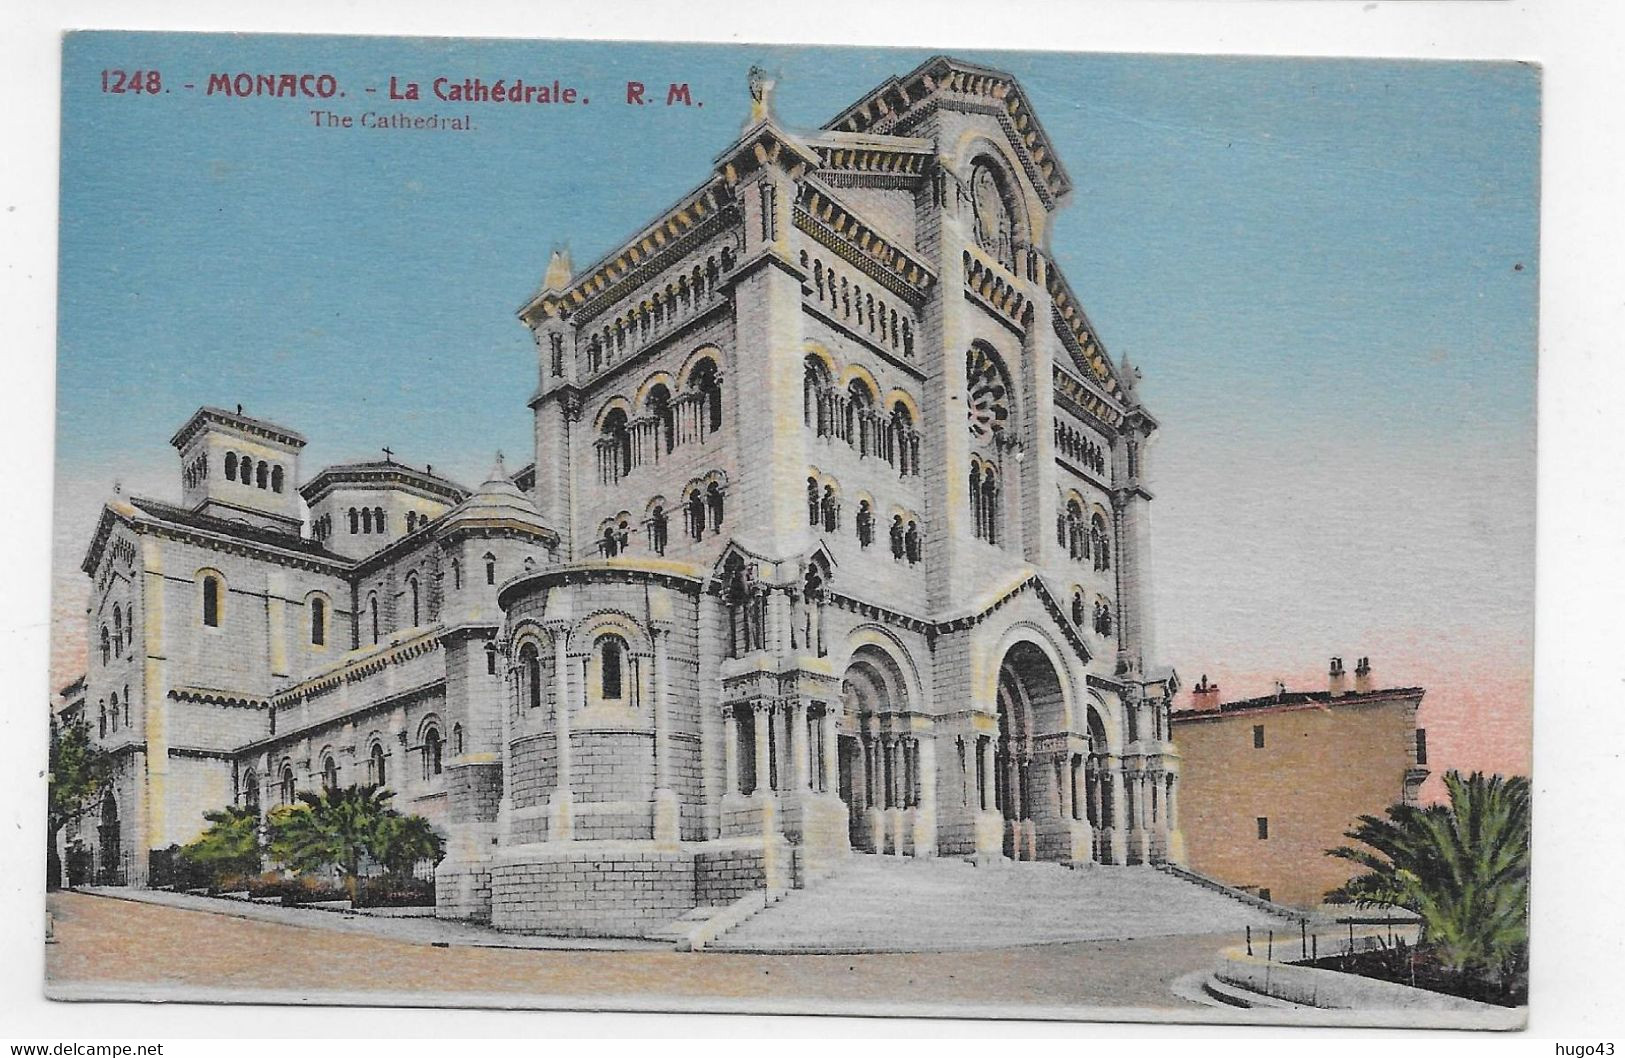 MONACO - N° 1248 - LA CATHEDRALE - CPA NON VOYAGEE - Saint Nicholas Cathedral